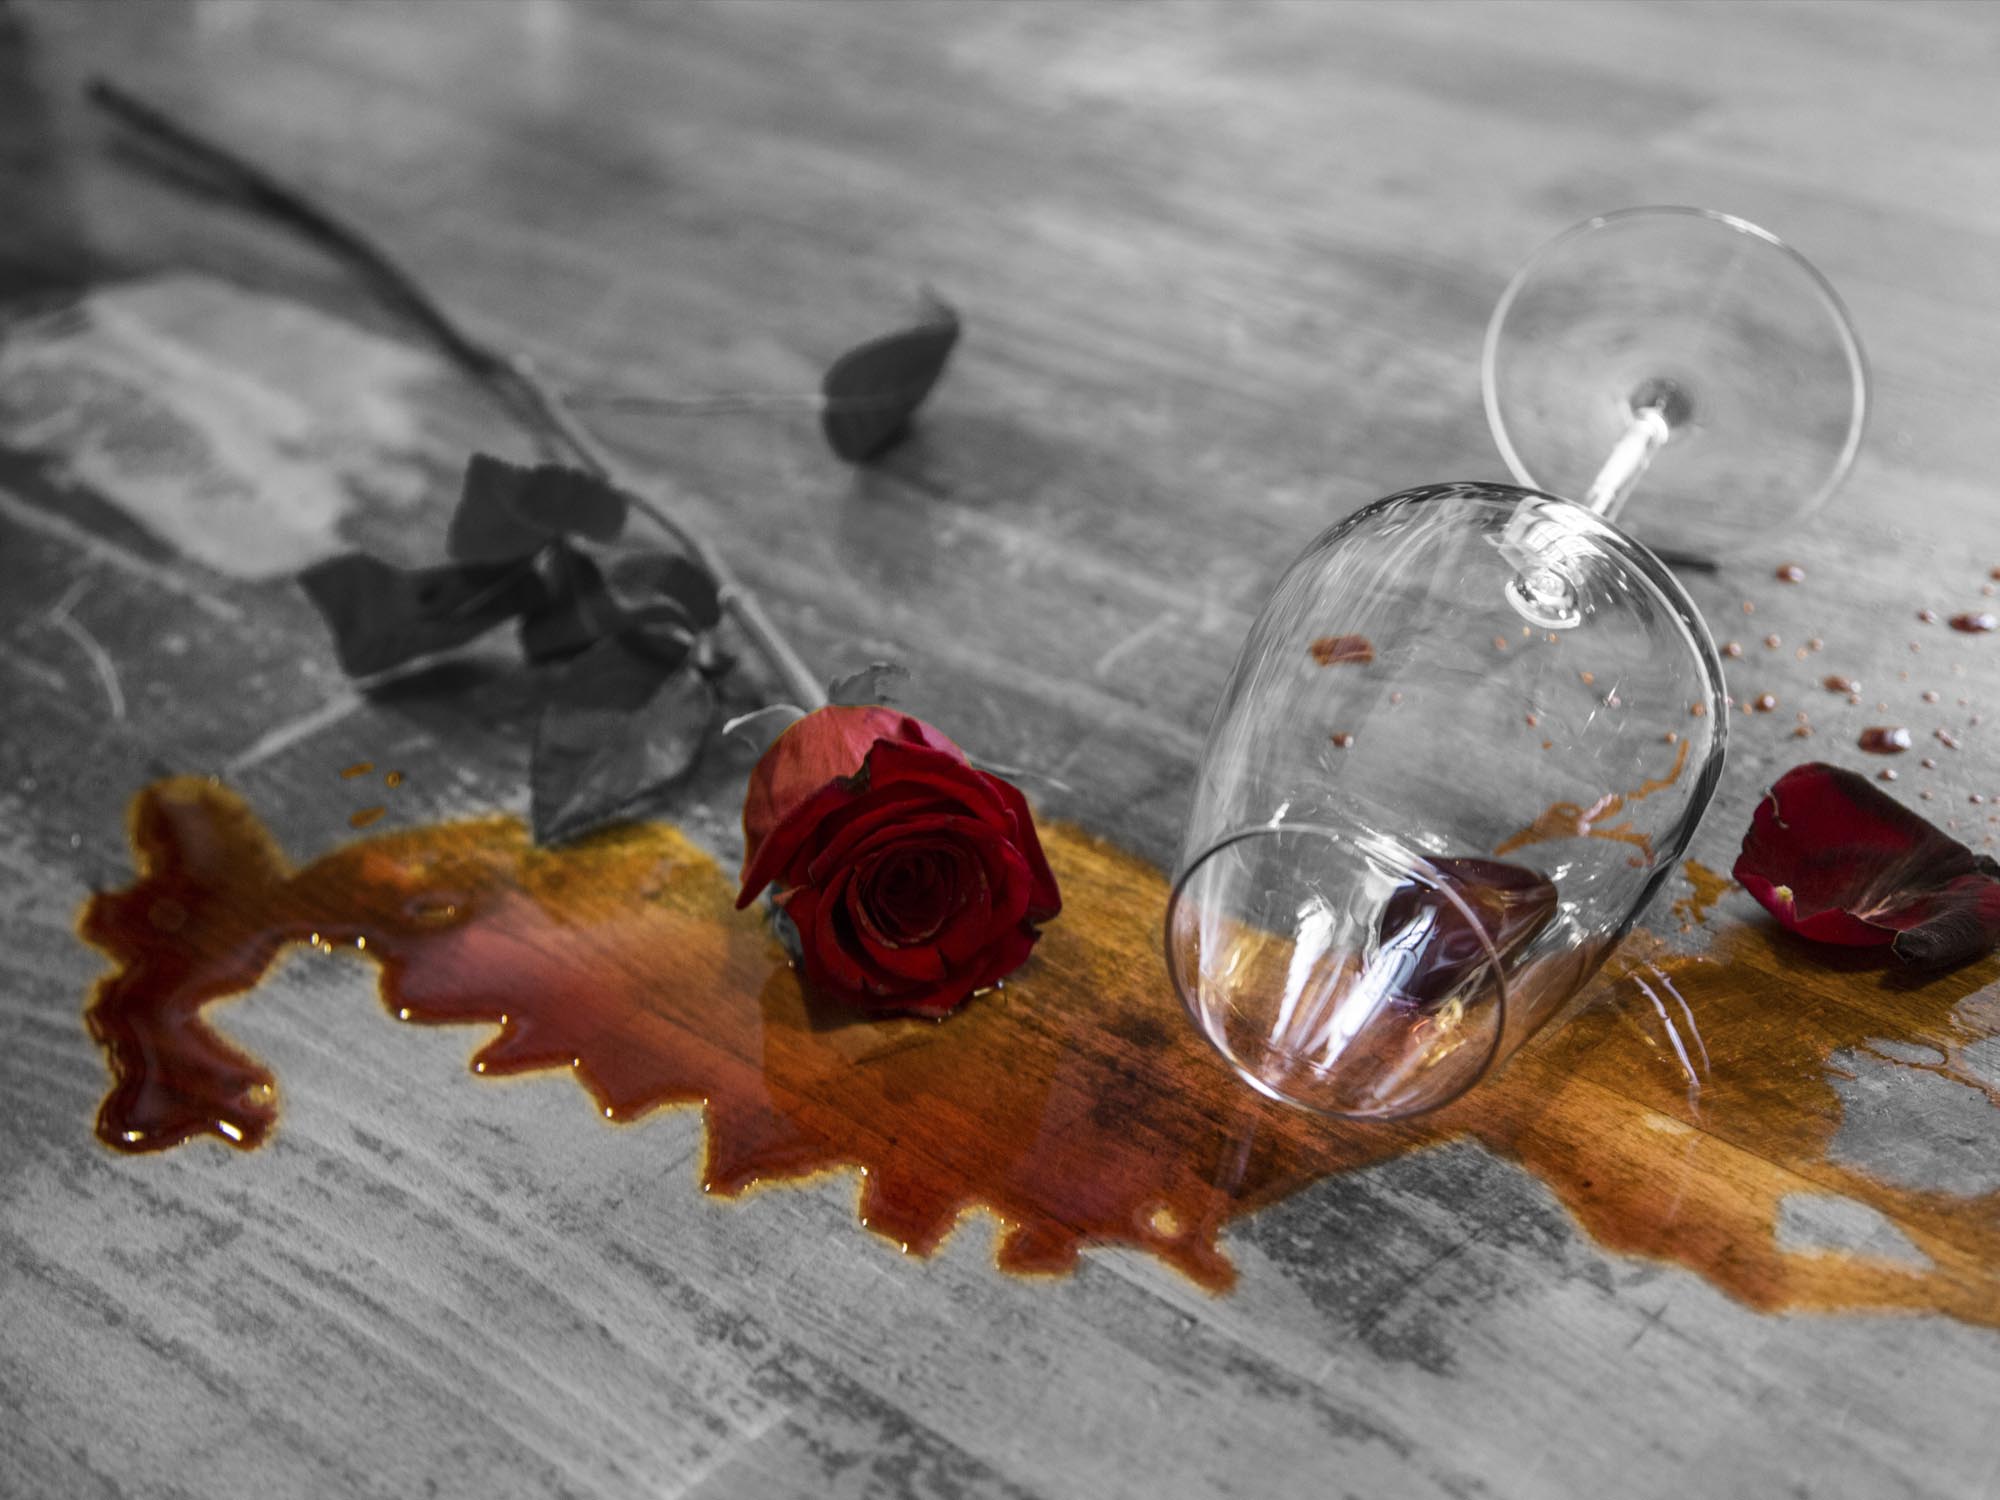 Still life in bianco e nero e rosso di un calice da vino ribaltato vicino a una rosa sopra dei parchetti di legno. Sotto c'è una macchia di vino.